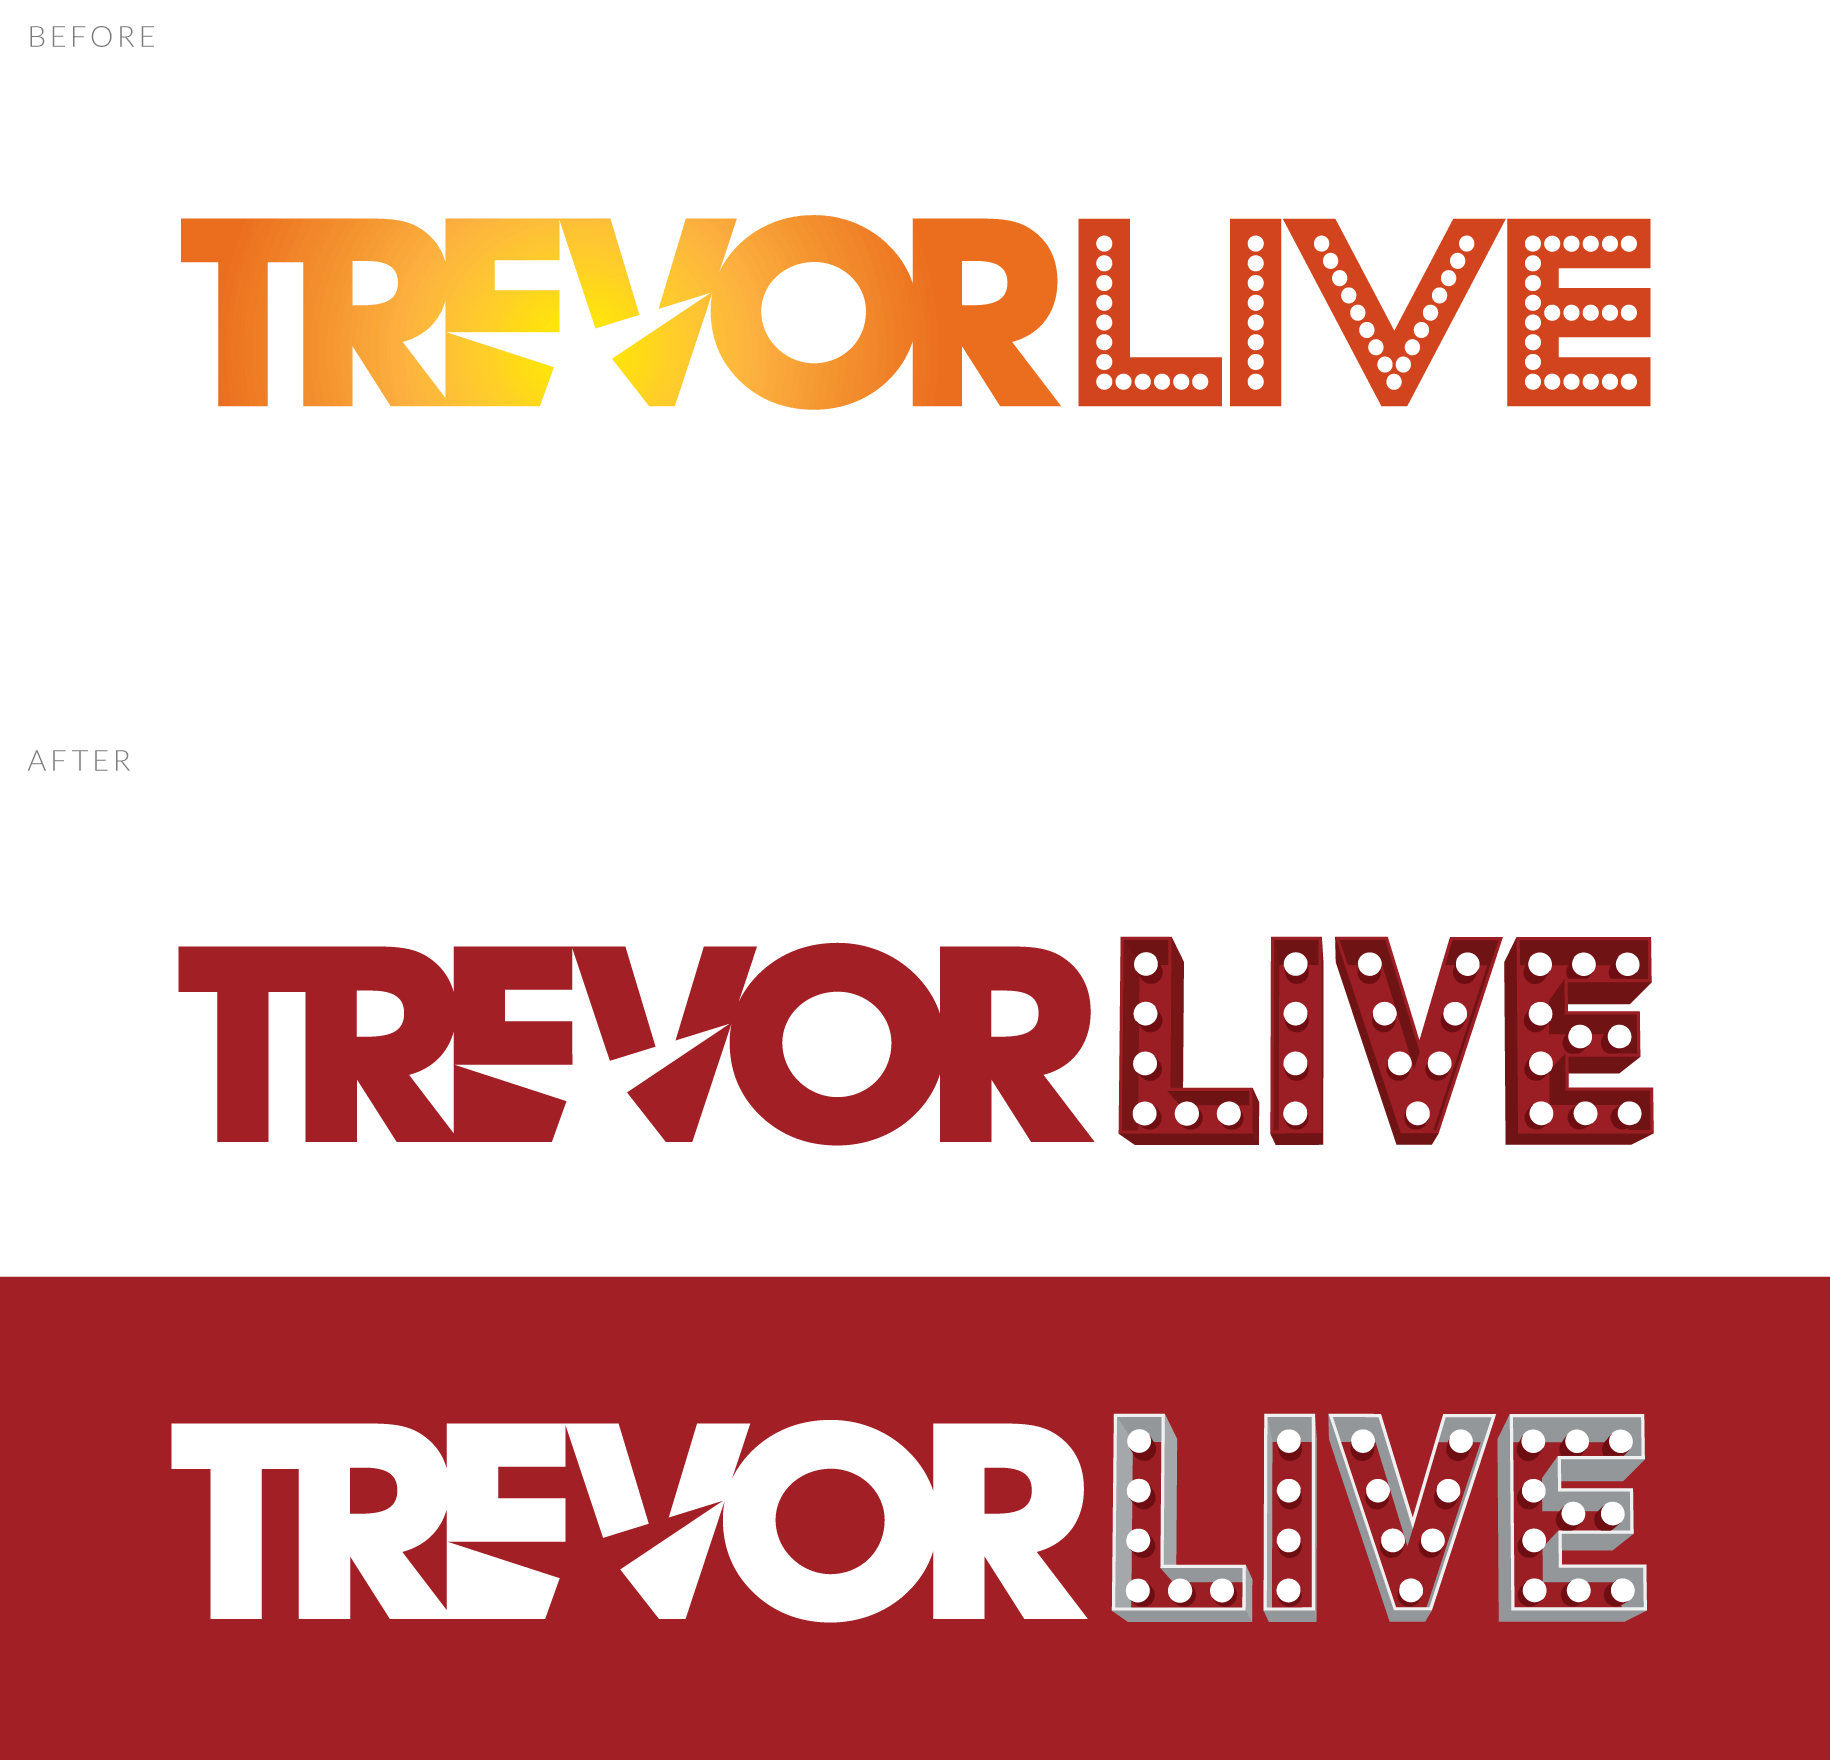 TrevorLIVE Logo Before & After